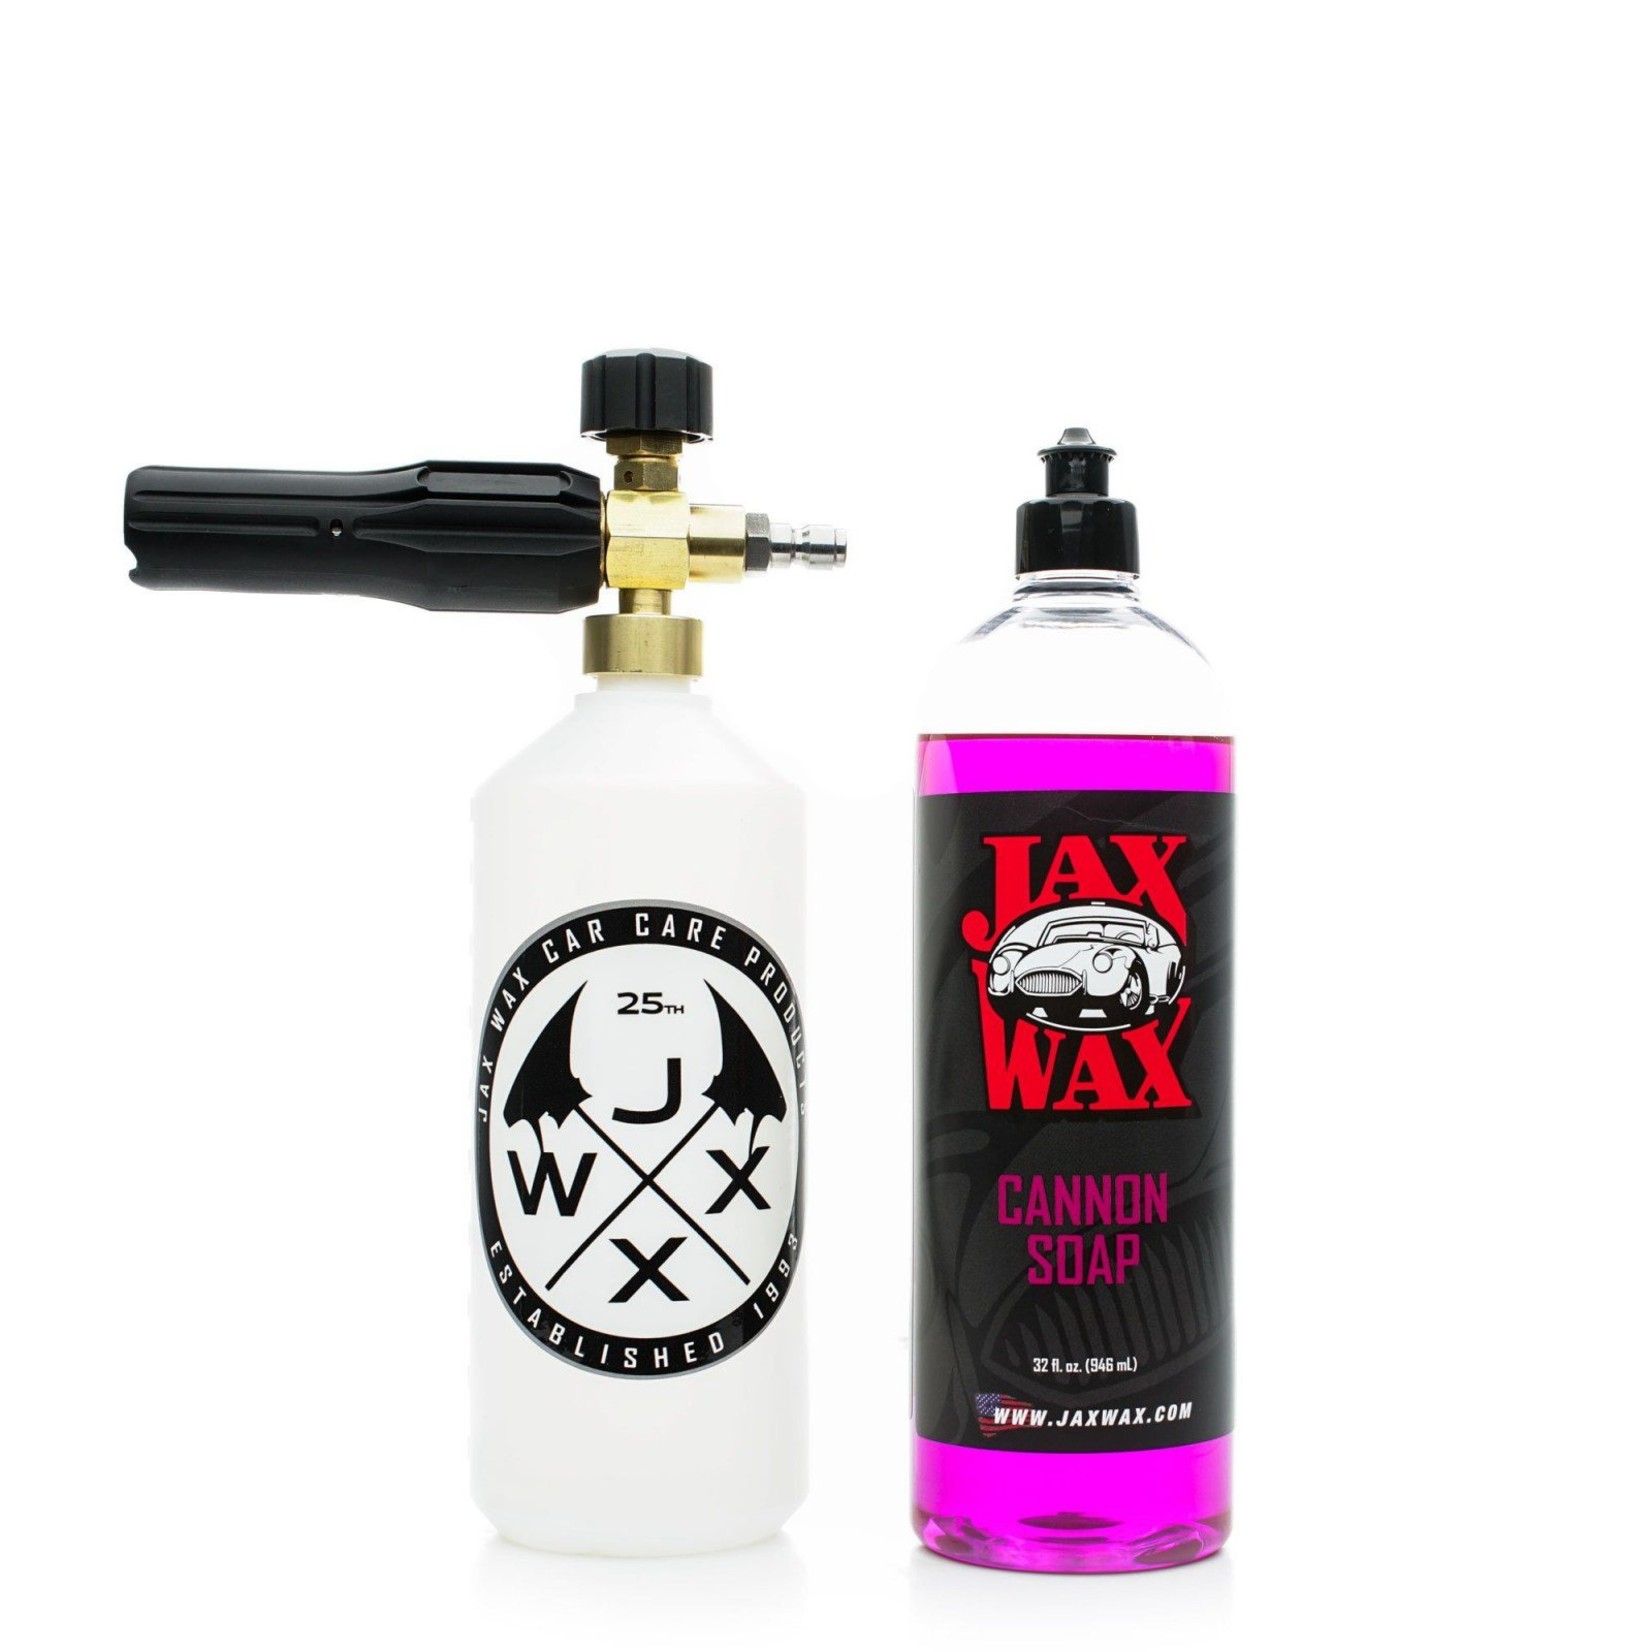 Jax Wax Foam Cannon Basic kit